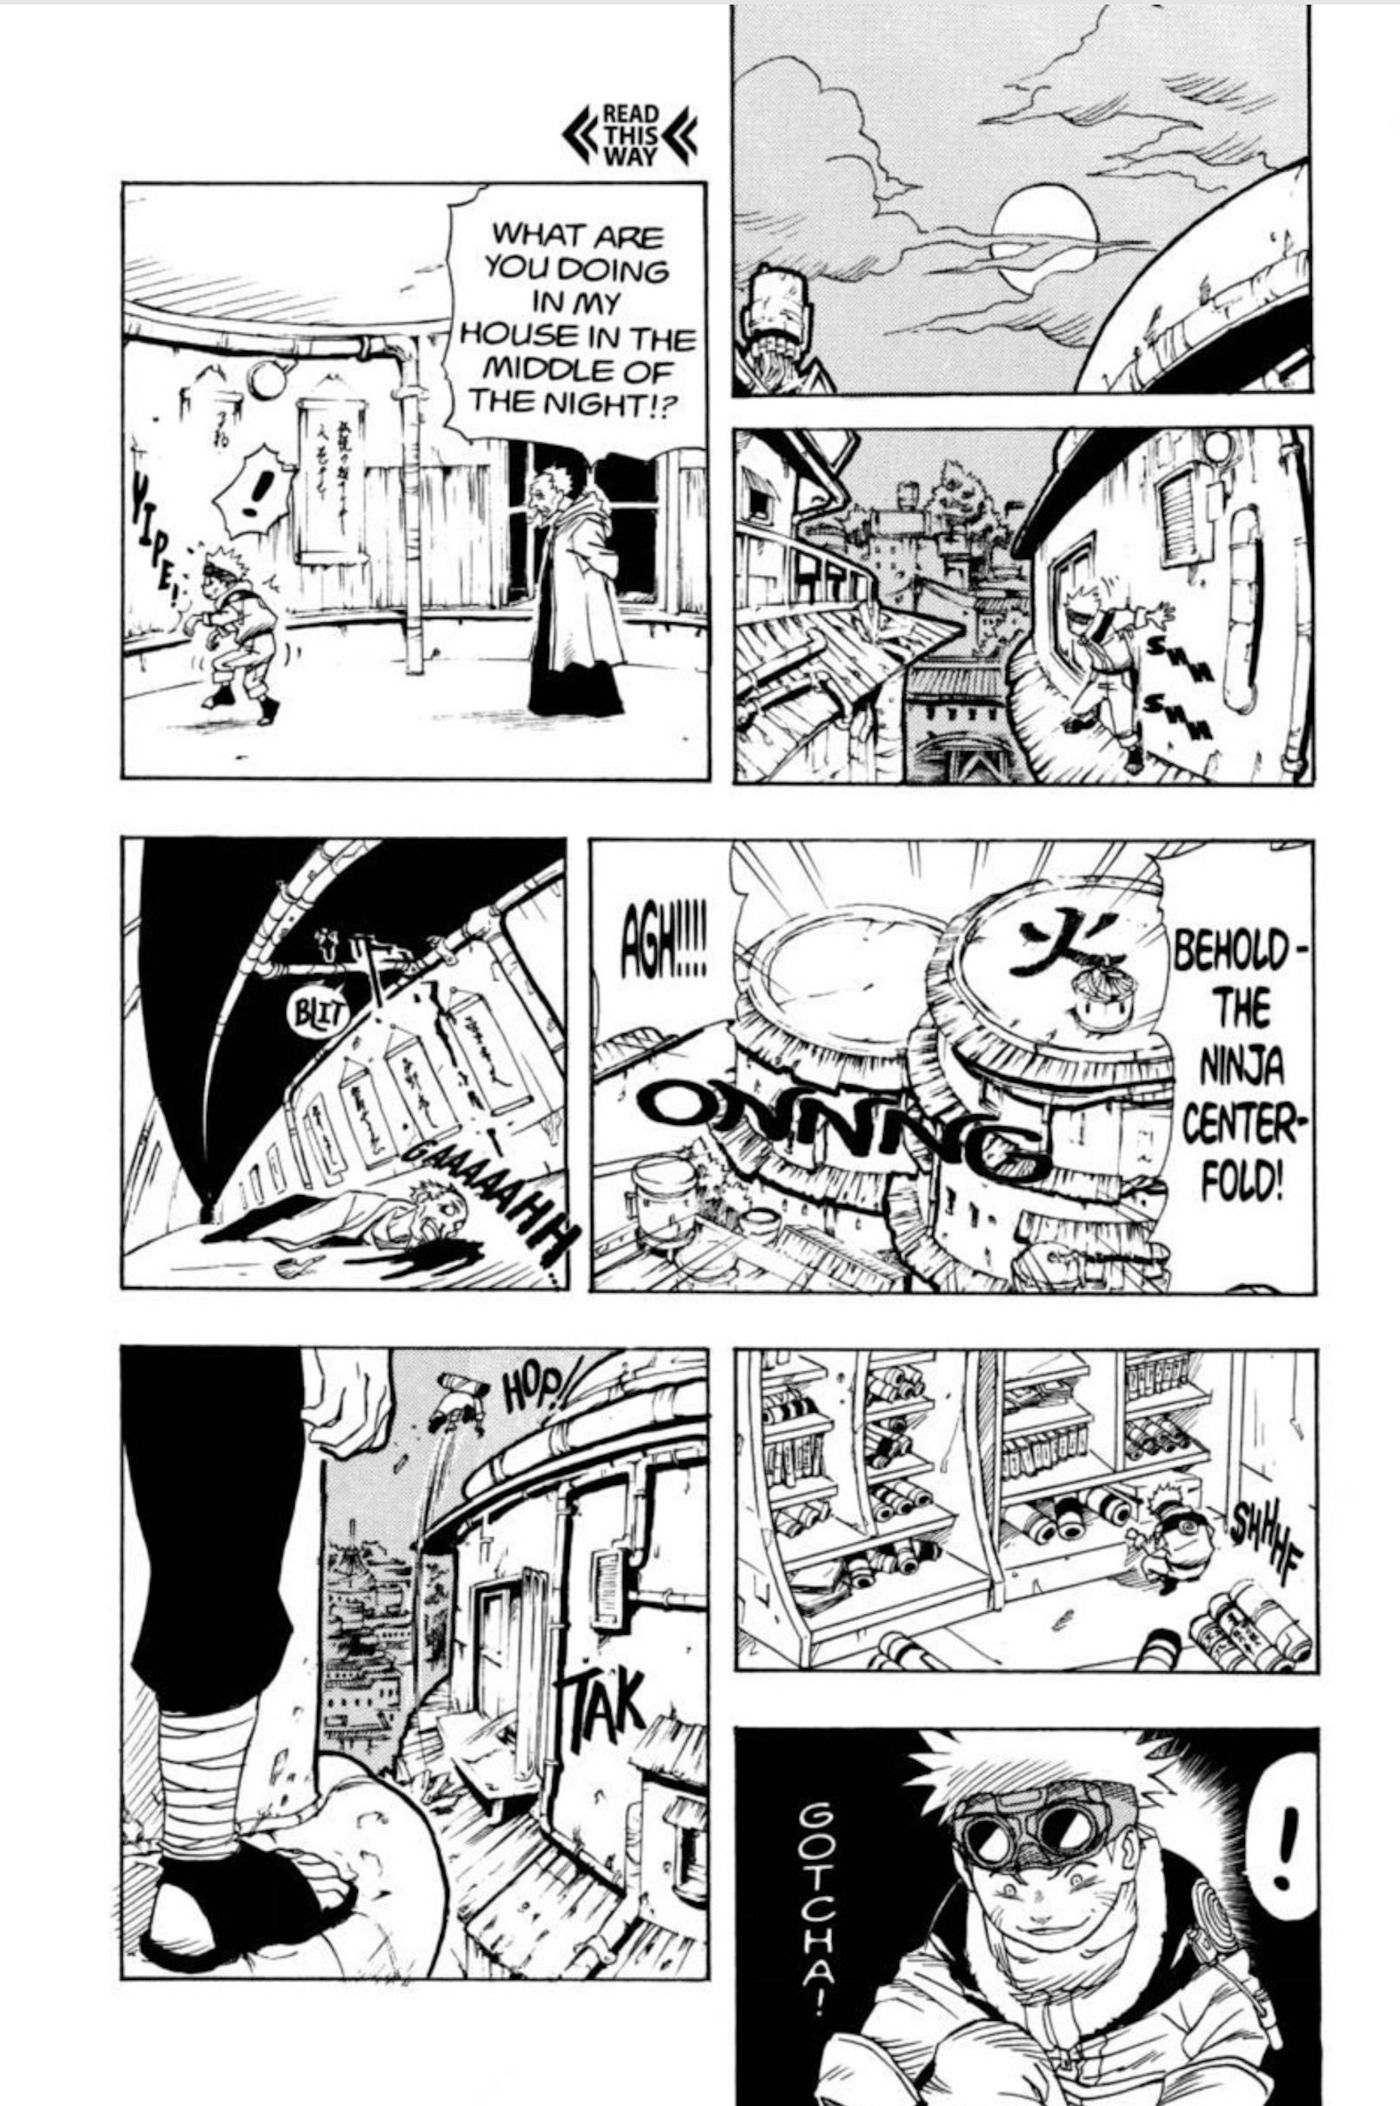 Gambar dari bab satu manga Naruto menunjukkan Naruto menyelinap ke manison Hokage, mengalahkan Hokage Ketiga, dan kemudian melarikan diri dengan Gulungan Segel.